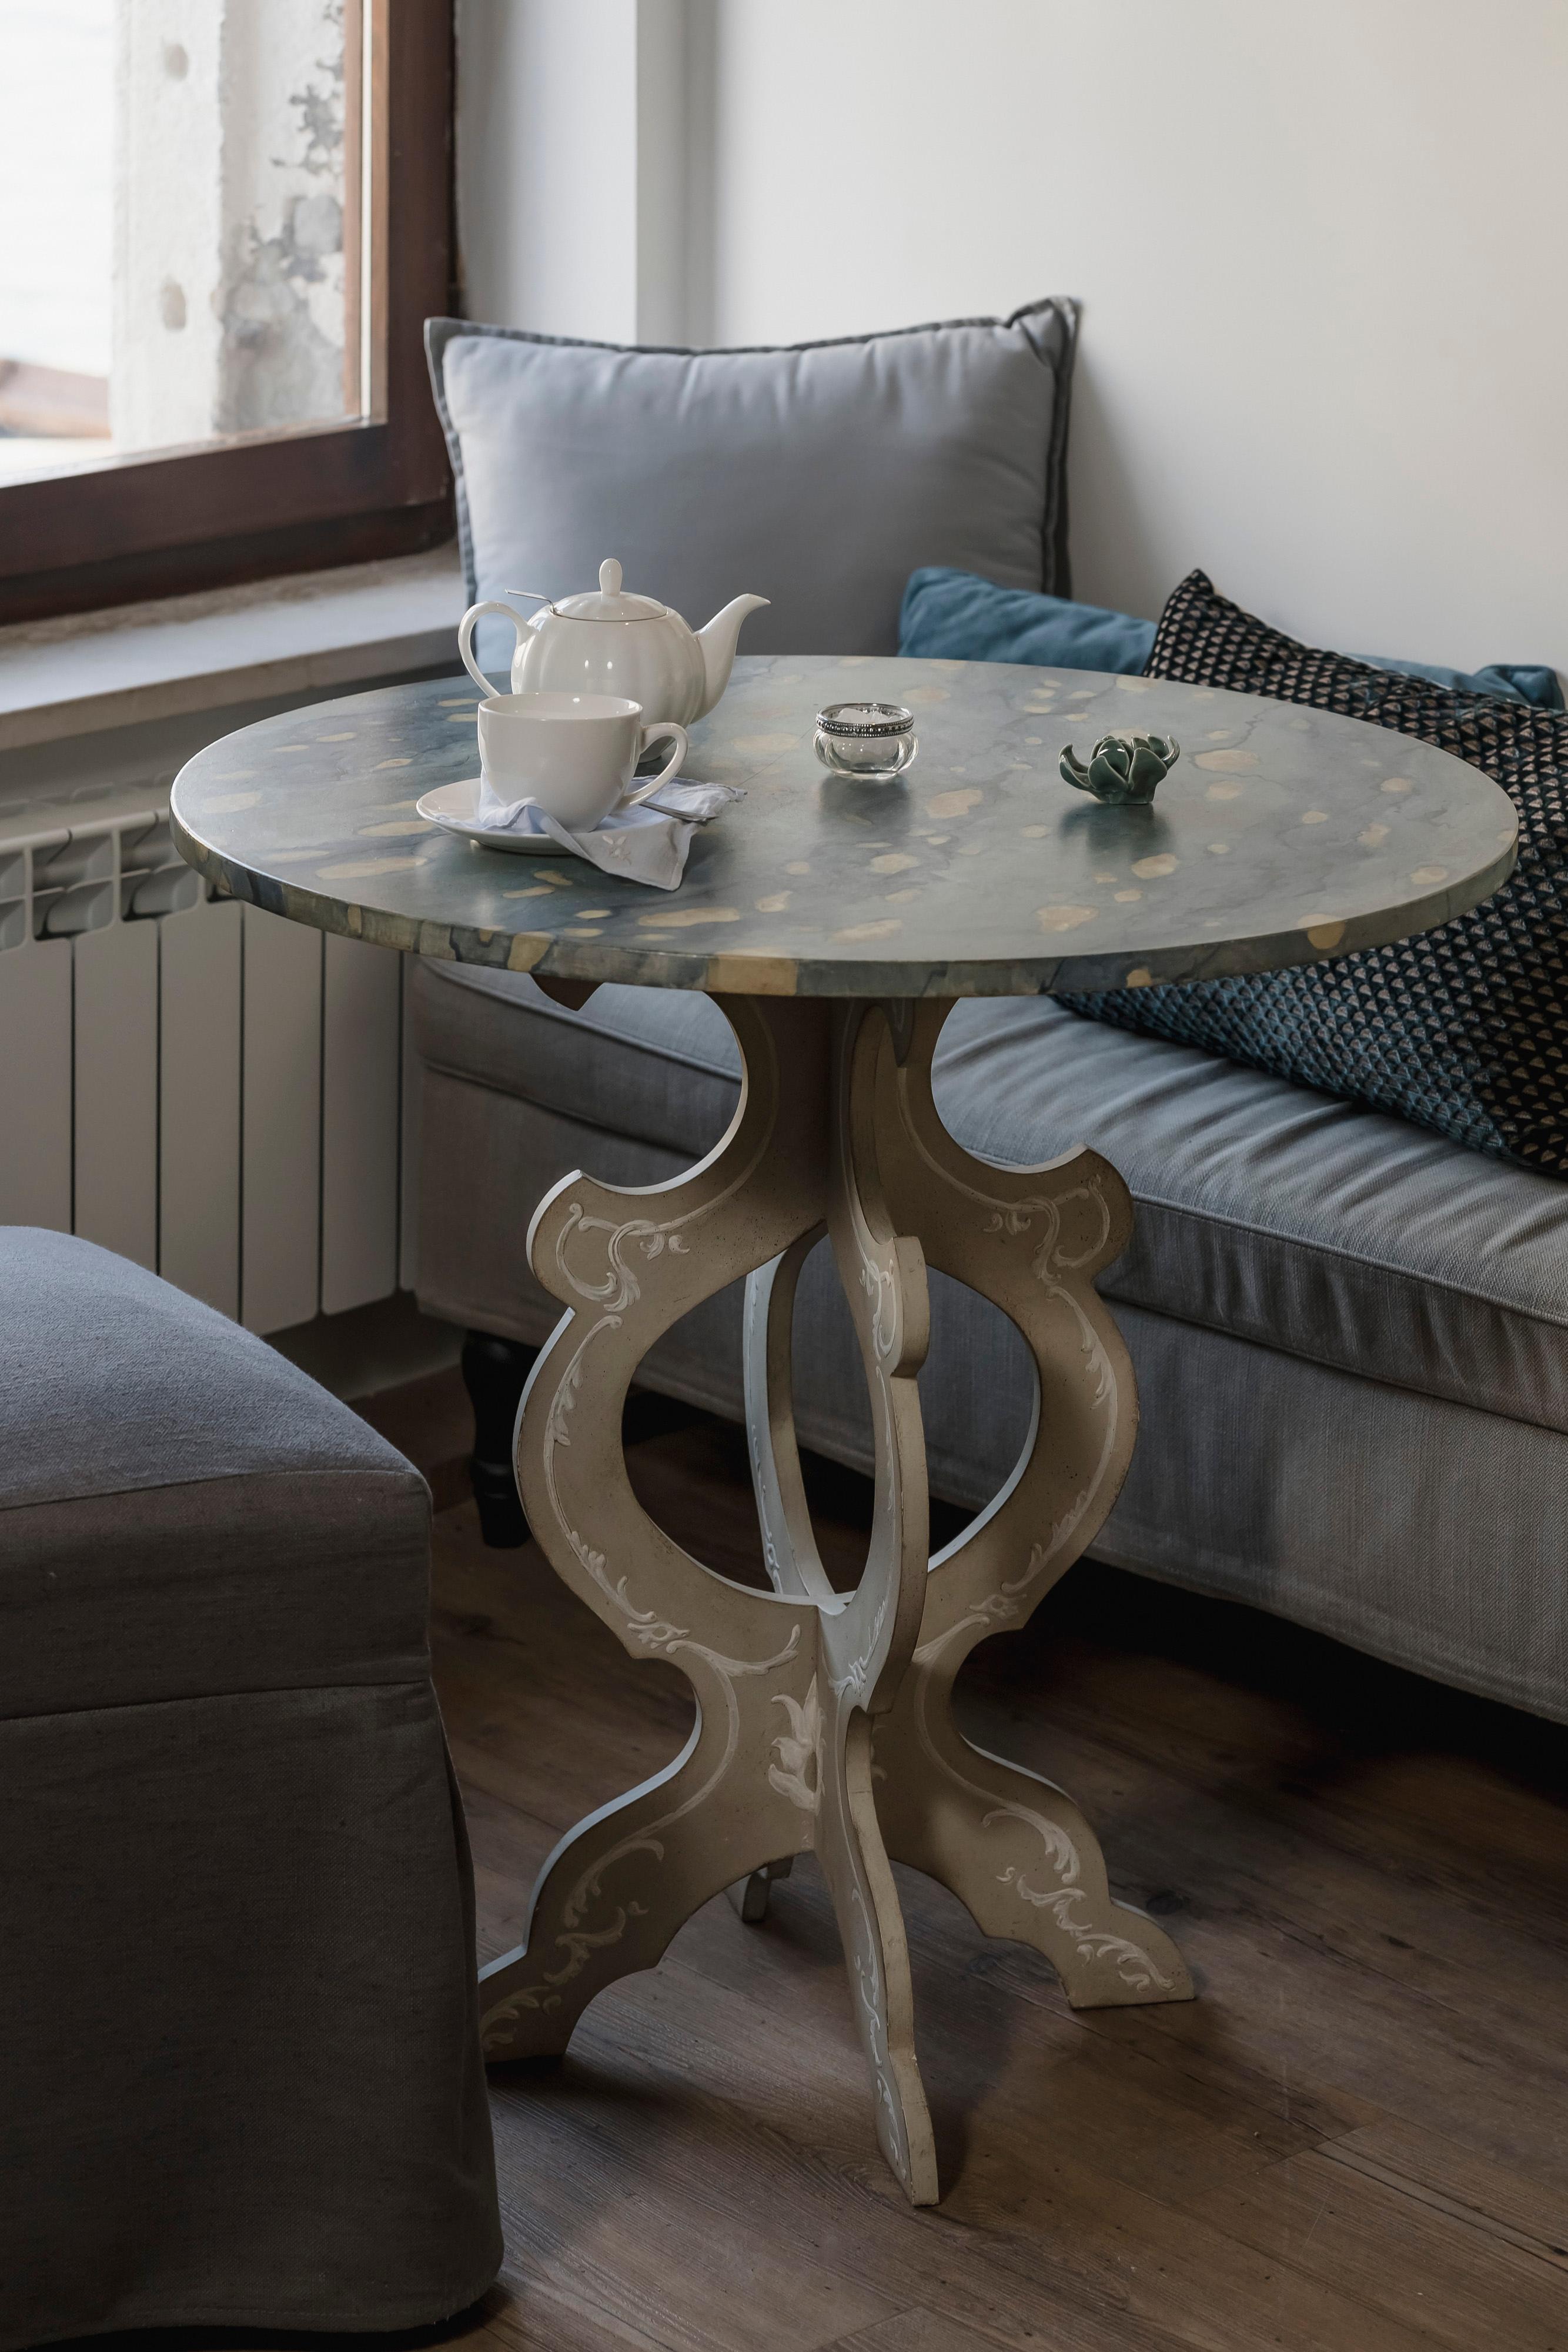 Dans notre collection de meubles peints à la main, nous avons le plaisir de vous présenter notre table basse Santa Maria del Giglio avec un plateau en bois à effet marbré et des pieds festonnés avec des décorations en relief.
Tout simplement la